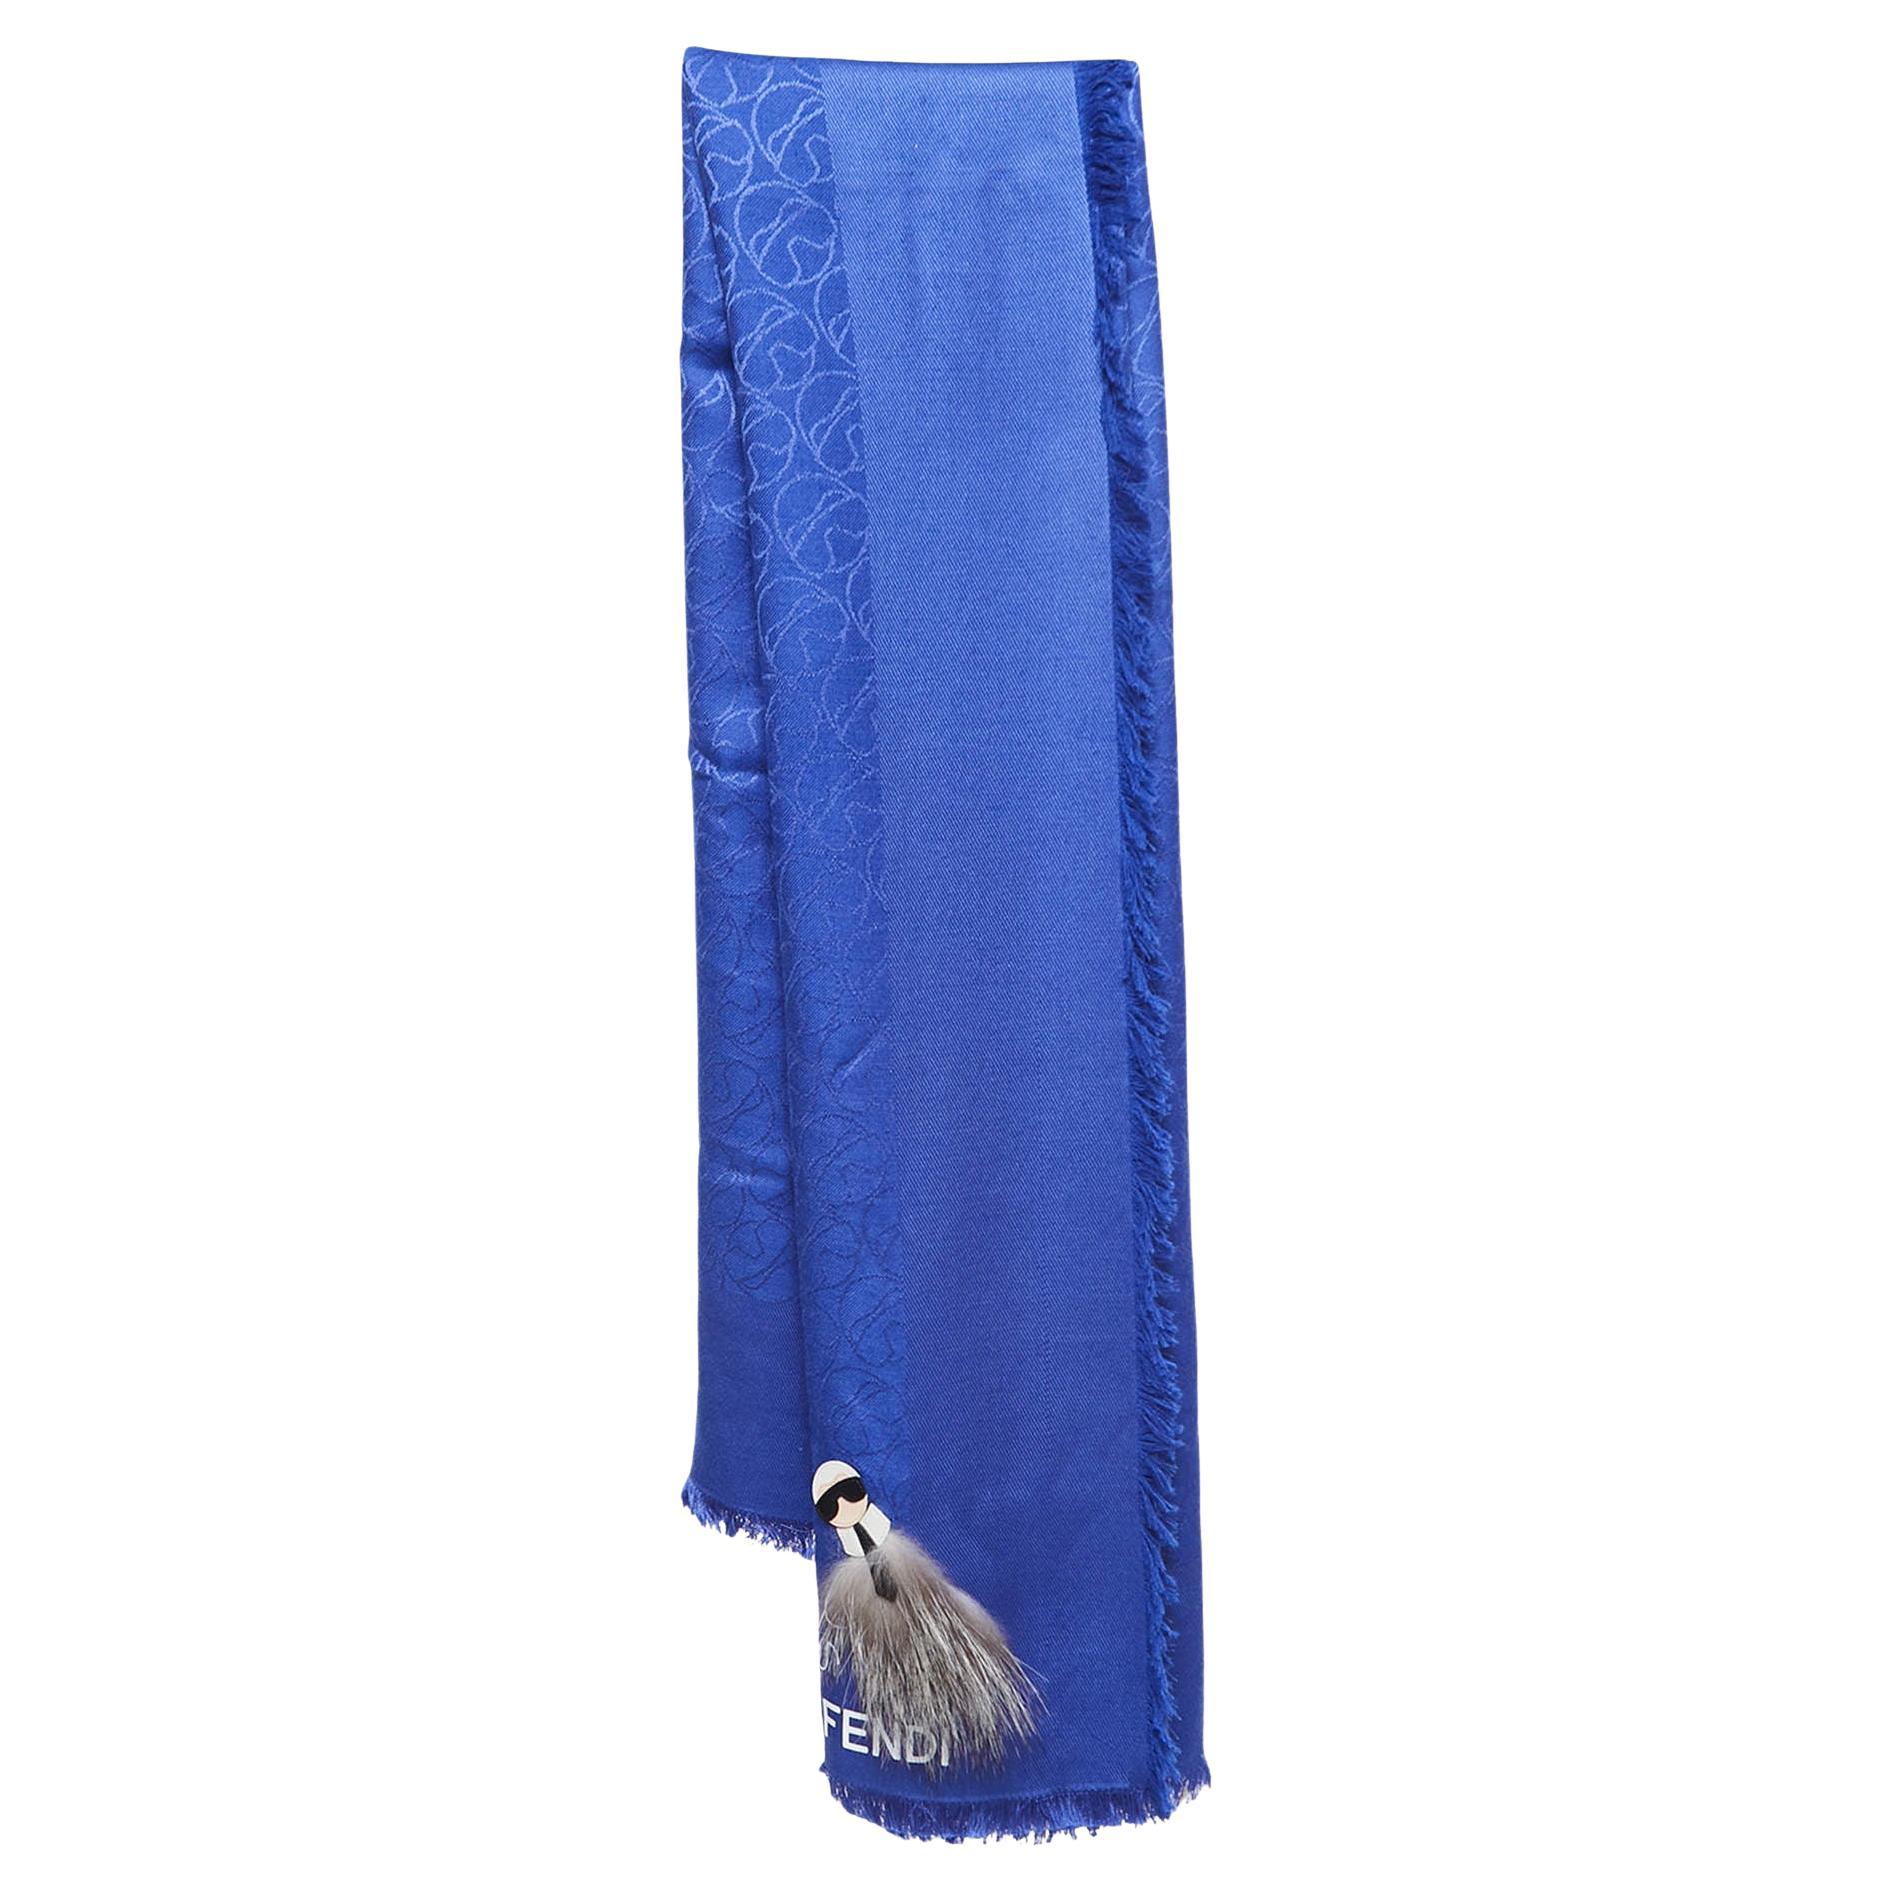 Châle en soie et laine Karlito de Fendi, bleu, avec détails appliqués en vente